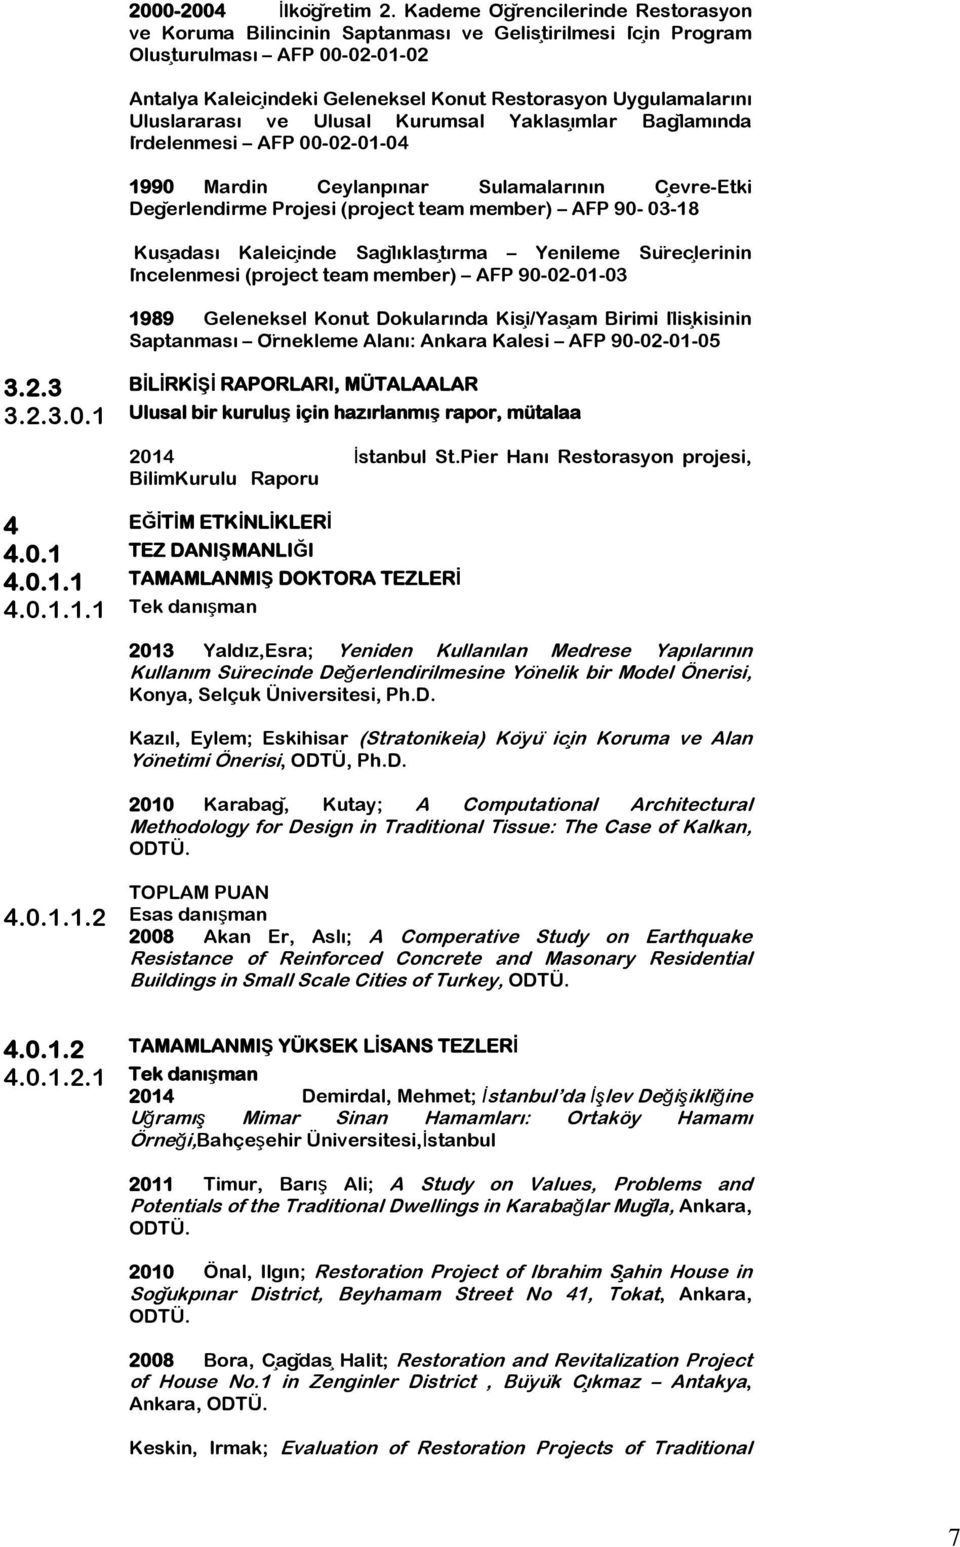 Uluslararası ve Ulusal Kurumsal Yaklasımlar Baglamında Irdelenmesi AFP 00-02-01-04 1990 Mardin Ceylanpınar Sulamalarının Cevre-Etki Degerlendirme Projesi (project team member) AFP 90-03-18 Kusadası